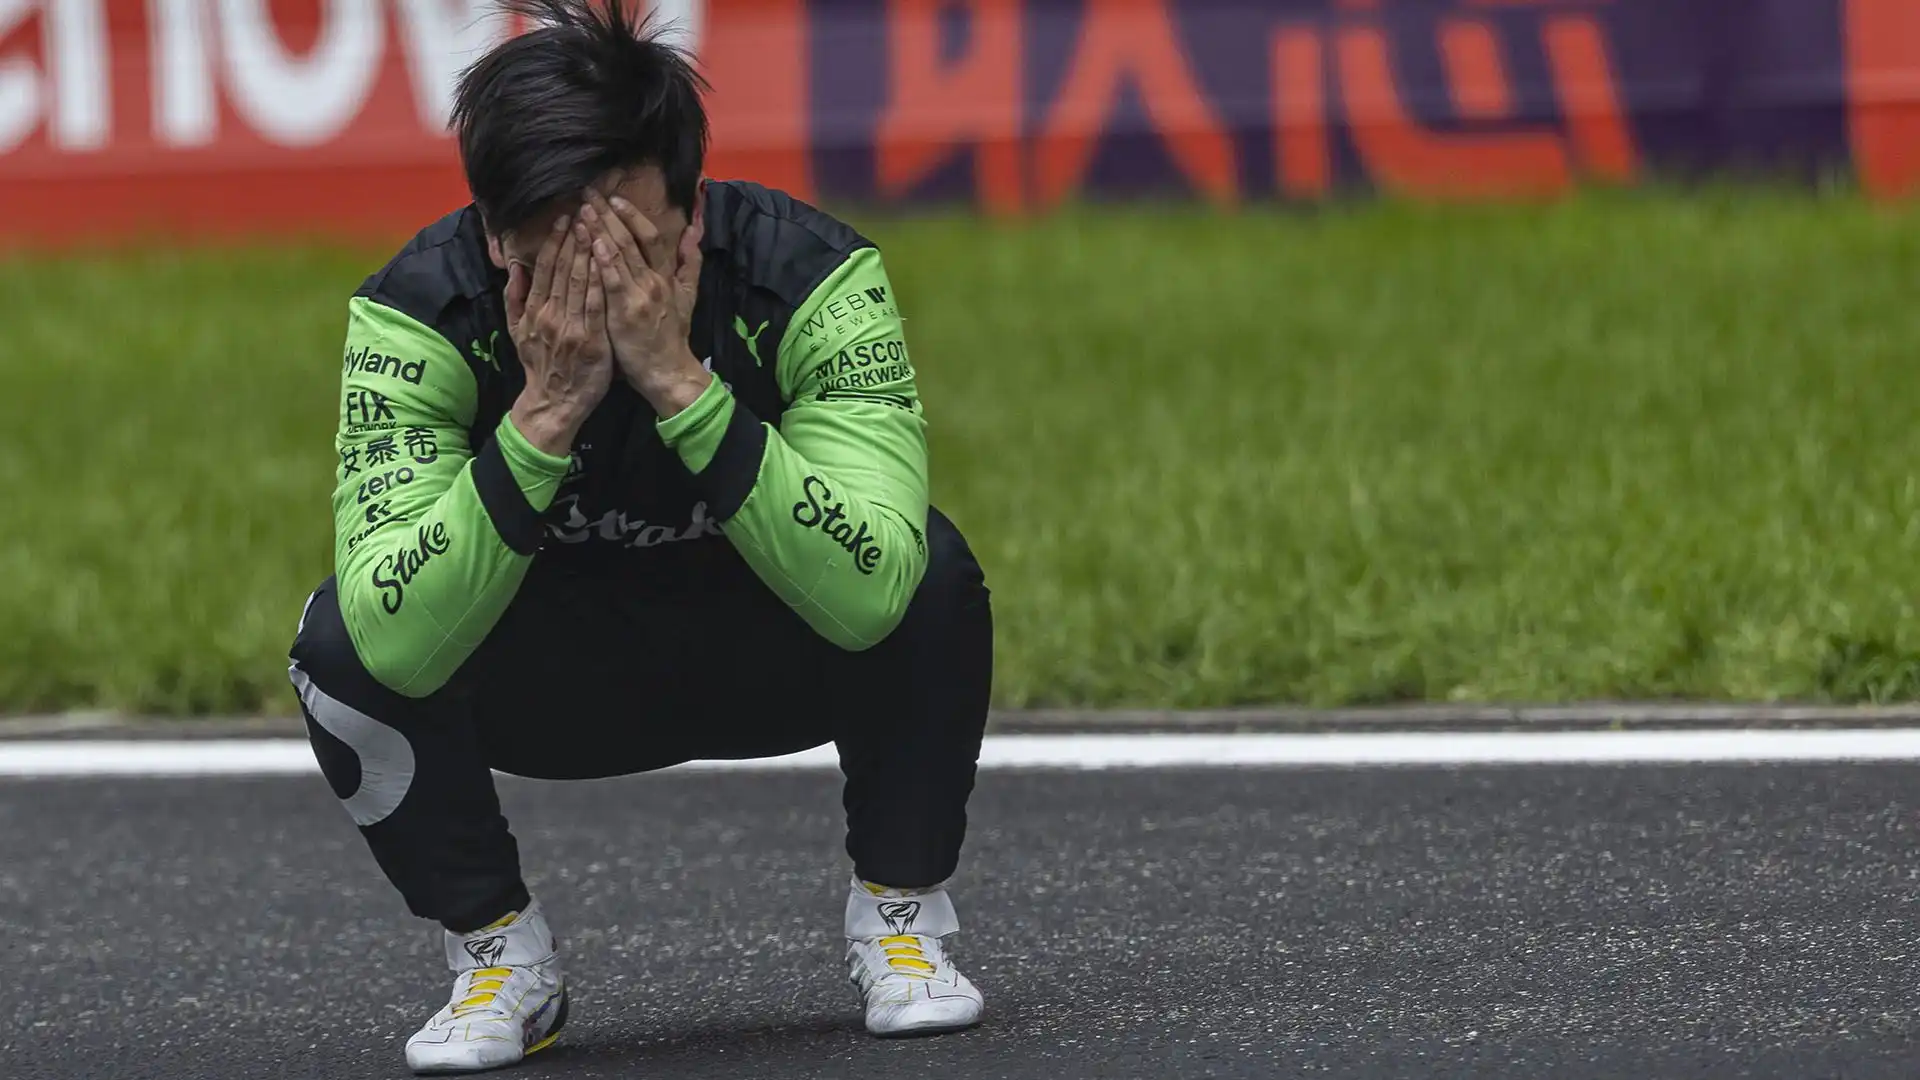 Le immagini di Guanyu Zhou in lacrime in pista hanno fatto il giro del mondo